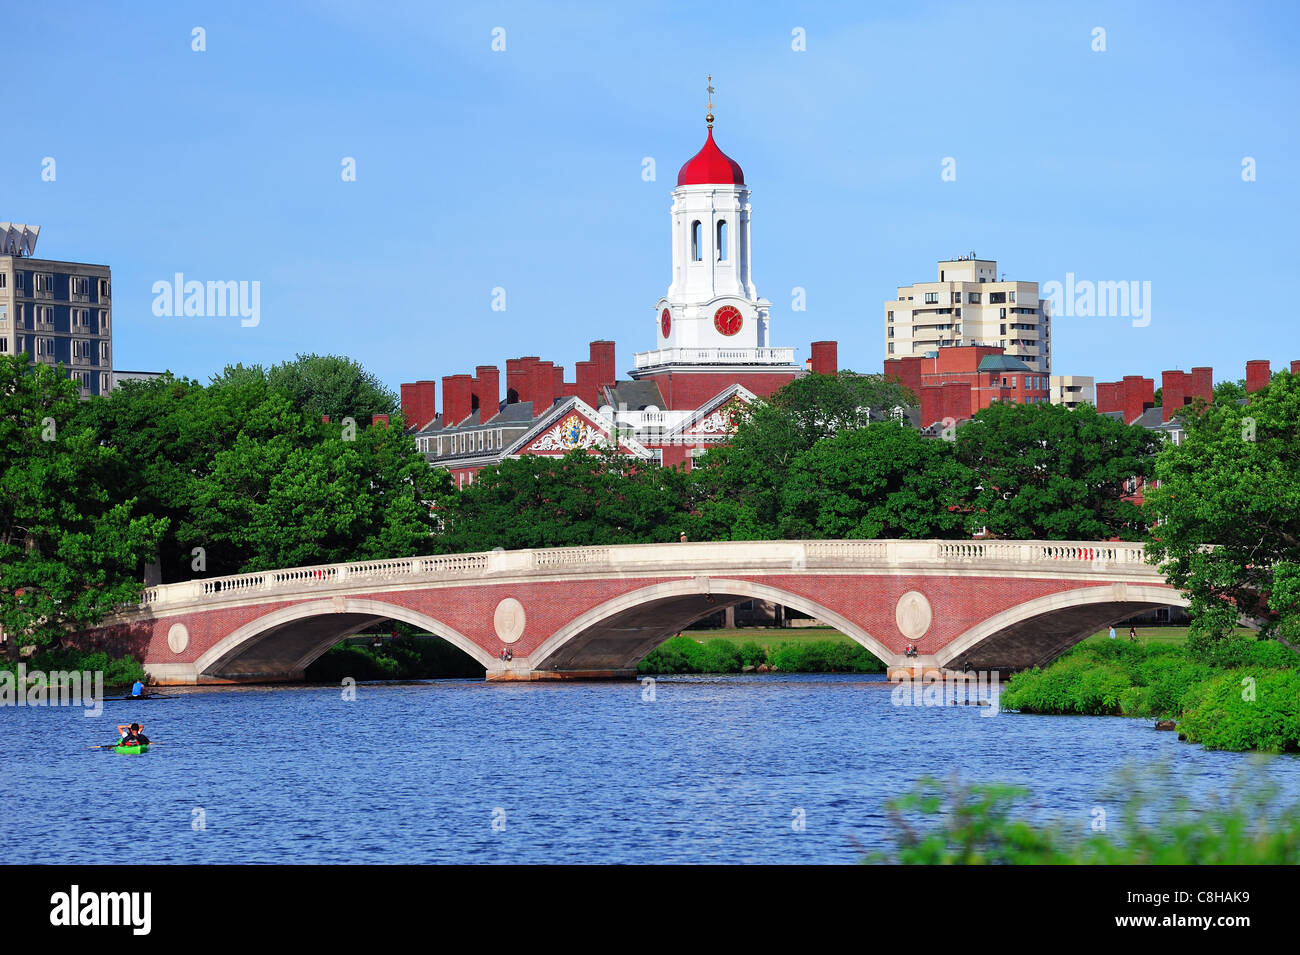 John W. Settimane Bridge e torre dell orologio su Charles River in Harvard University campus a Boston con alberi, barca e cielo blu. Foto Stock